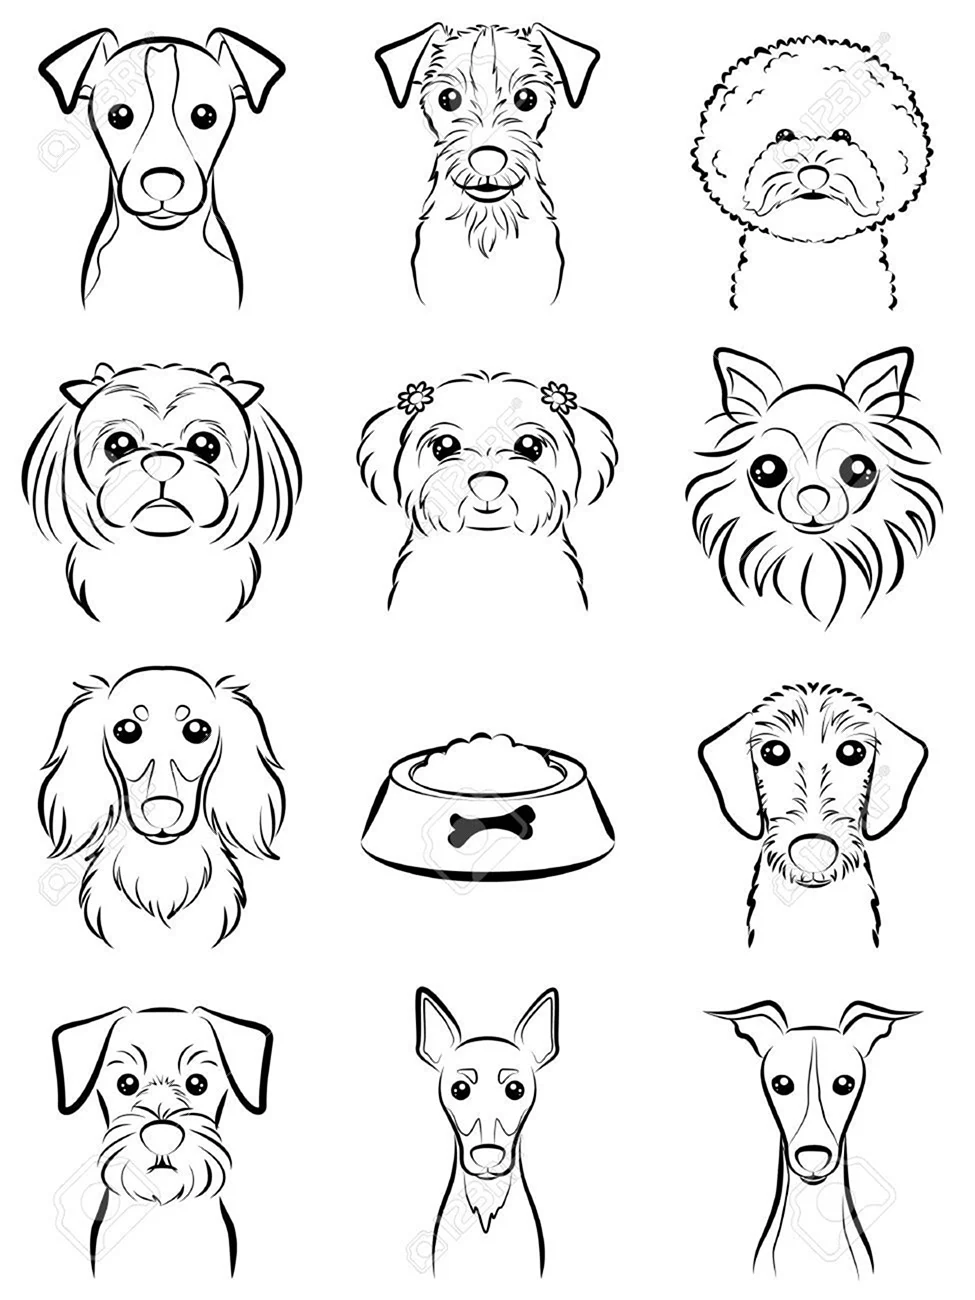 Как нарисовать милую собаку из аниме за 7 шагов | AniMaFun | Дзен